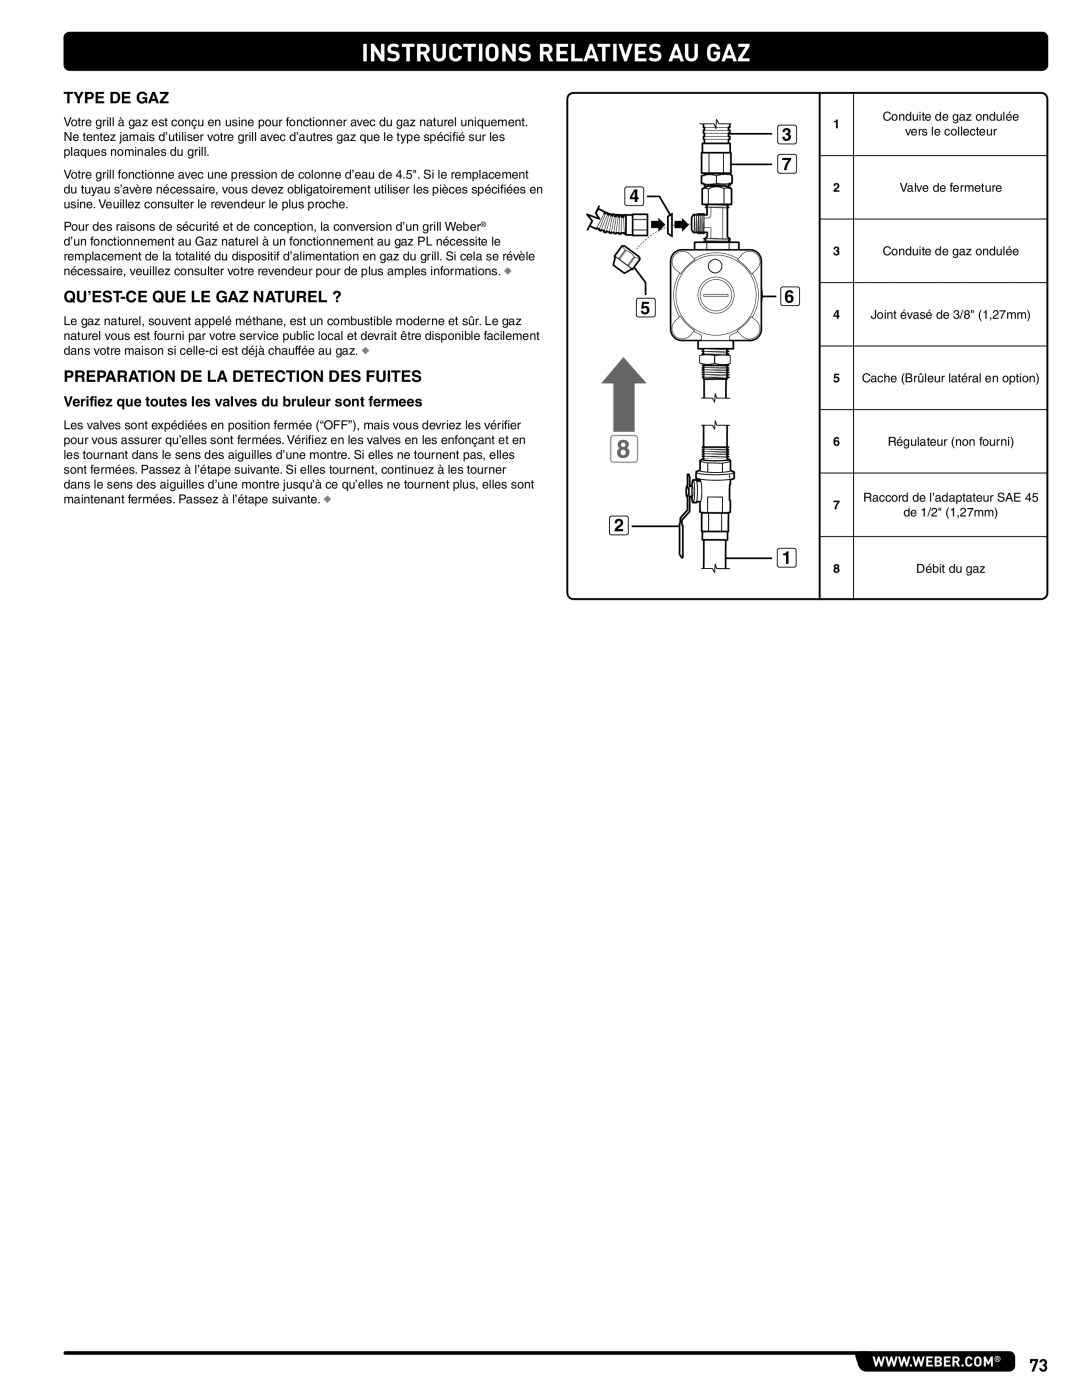 Weber 56576, Summit Gas Grill manual Instructions Relatives Au Gaz, Type De Gaz, Qu’Est-Ce Que Le Gaz Naturel ? 